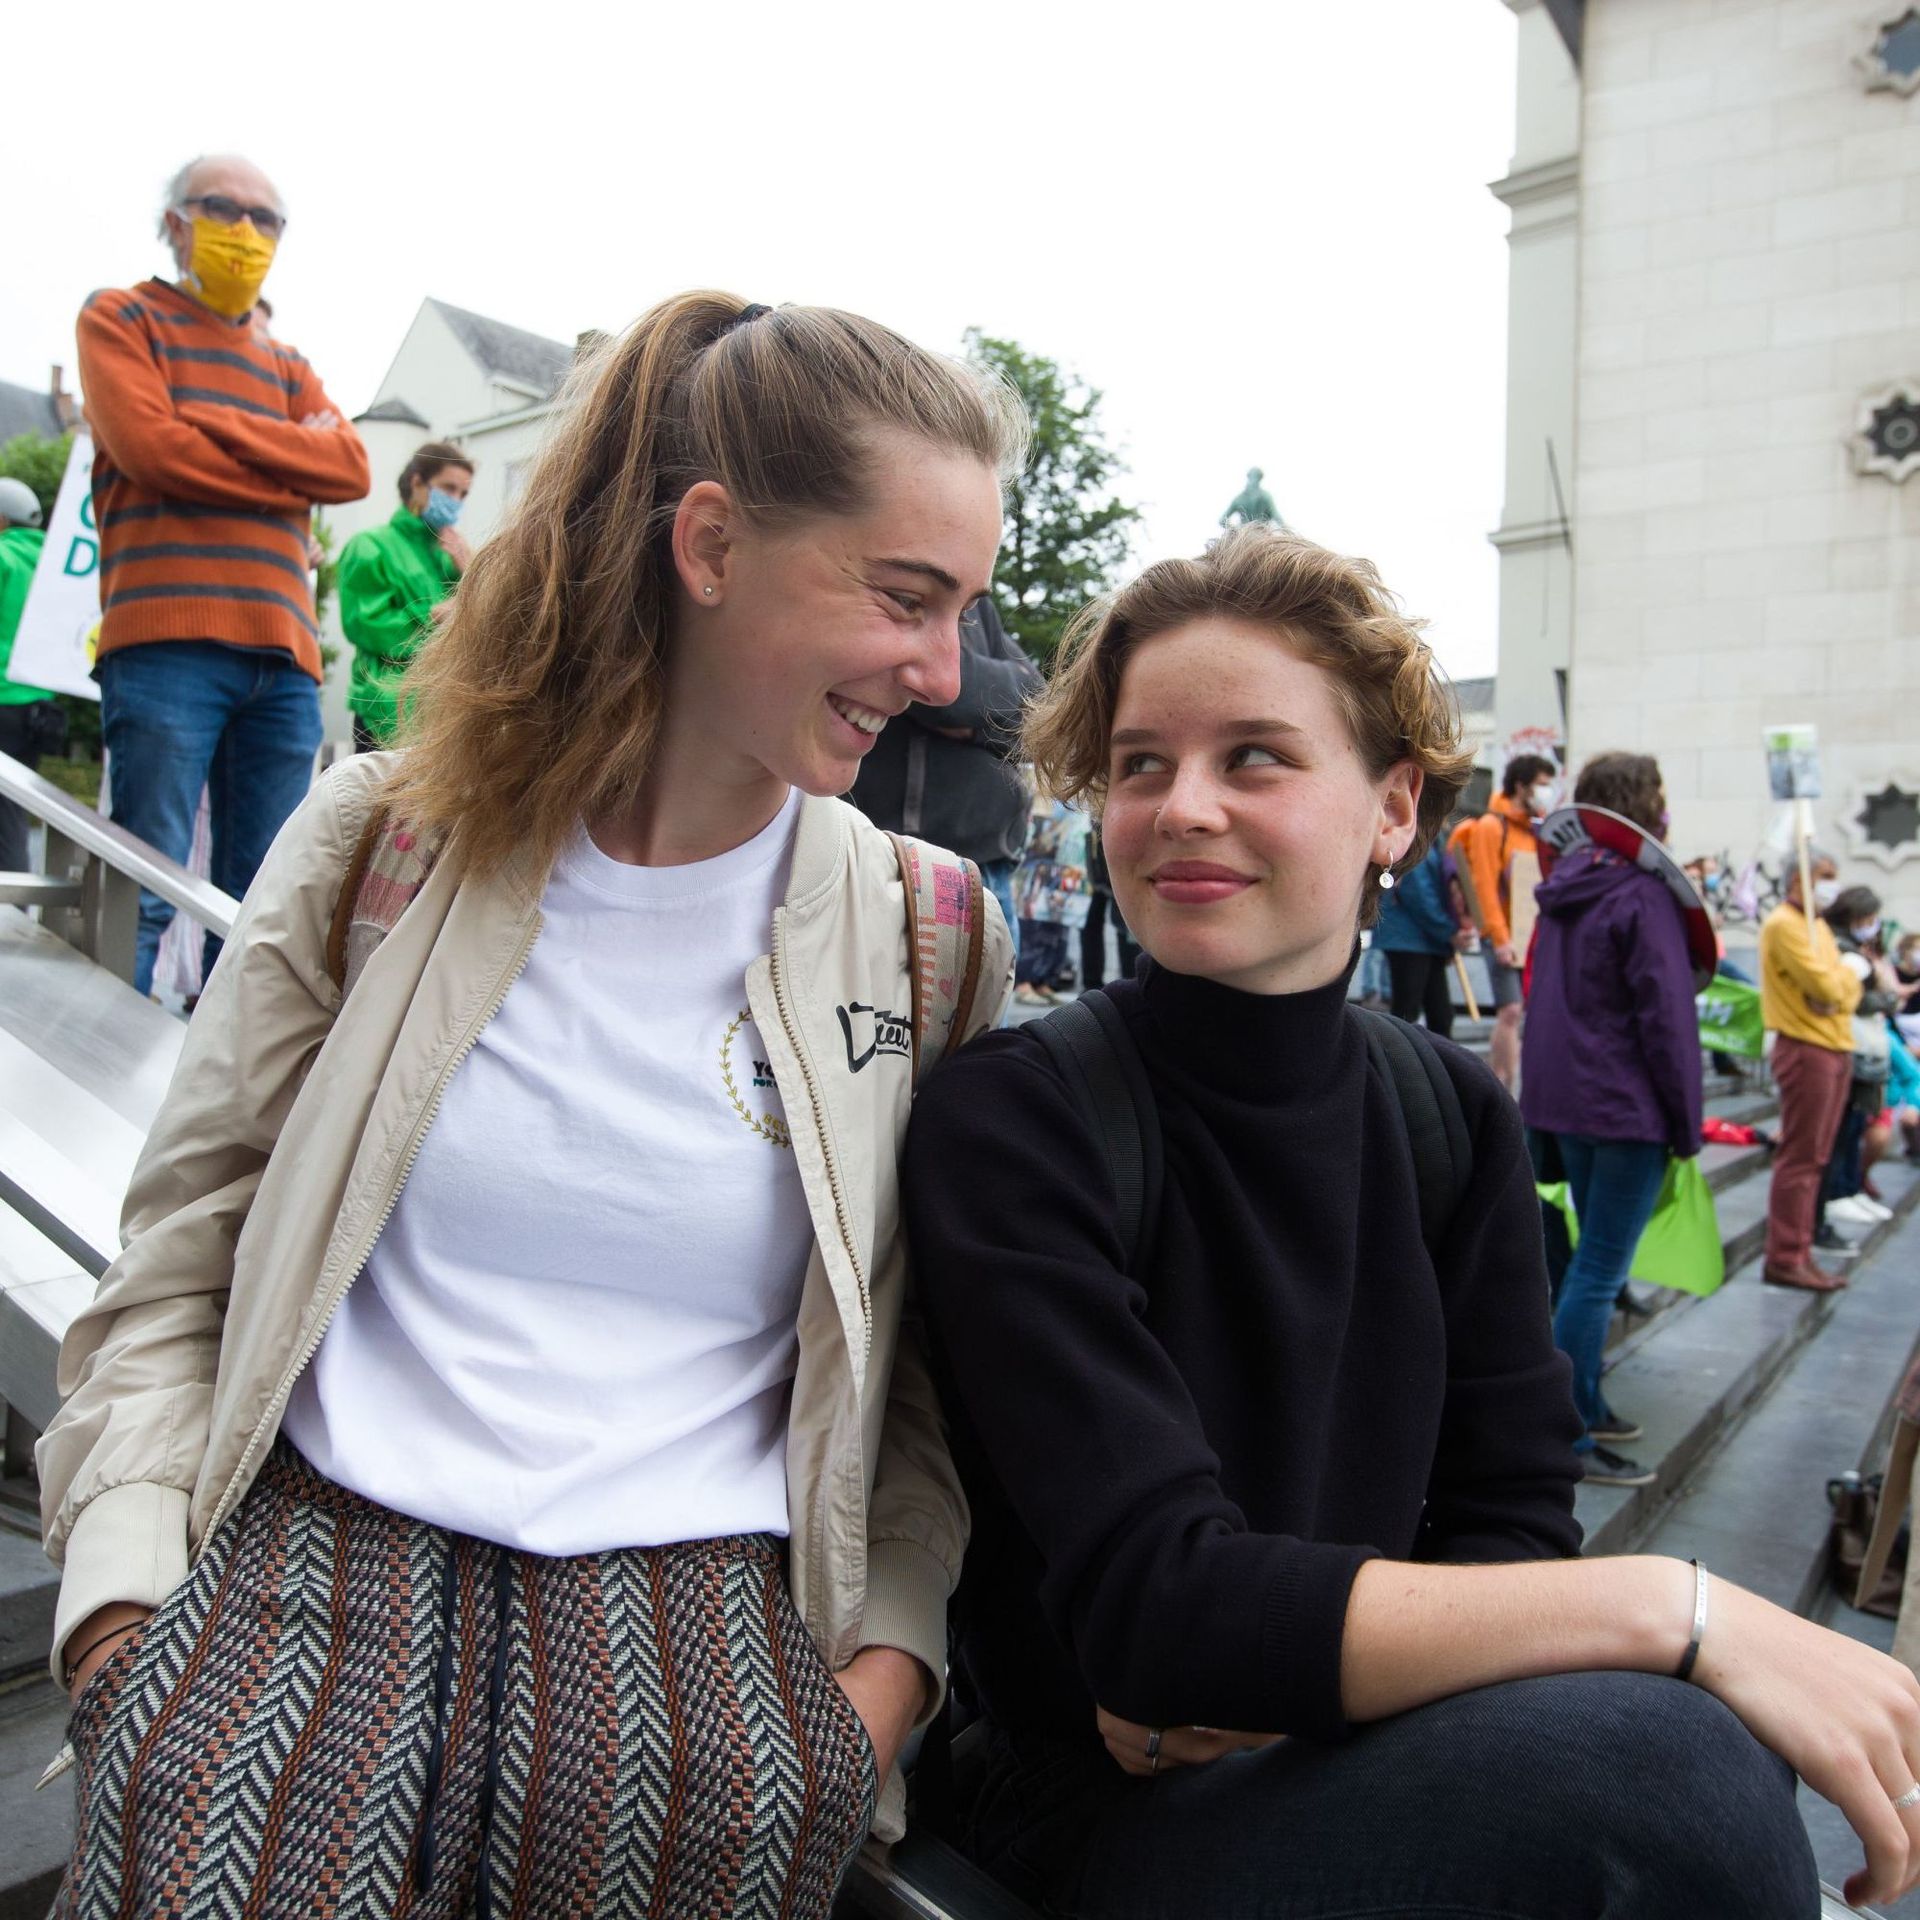 Adélaïde Charlier à gauche et Anuna De Wever à droite, les deux activistes incarnent la lutte contre les changements climatiques en Belgique.